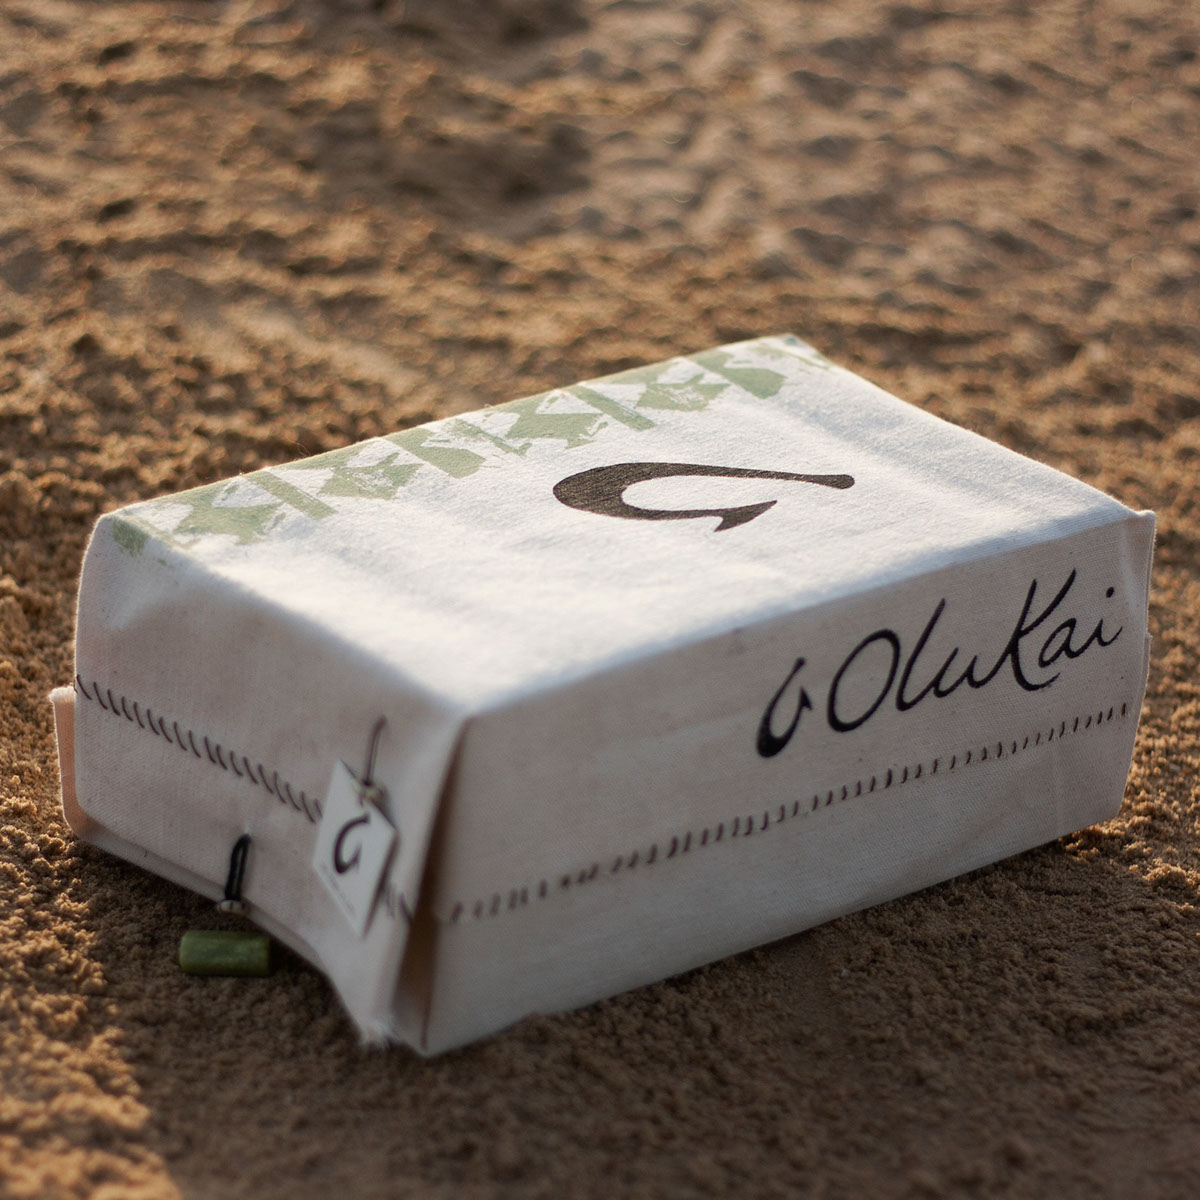 Olukai shoes shoe box reusable eco-friendly Sustainable earthy